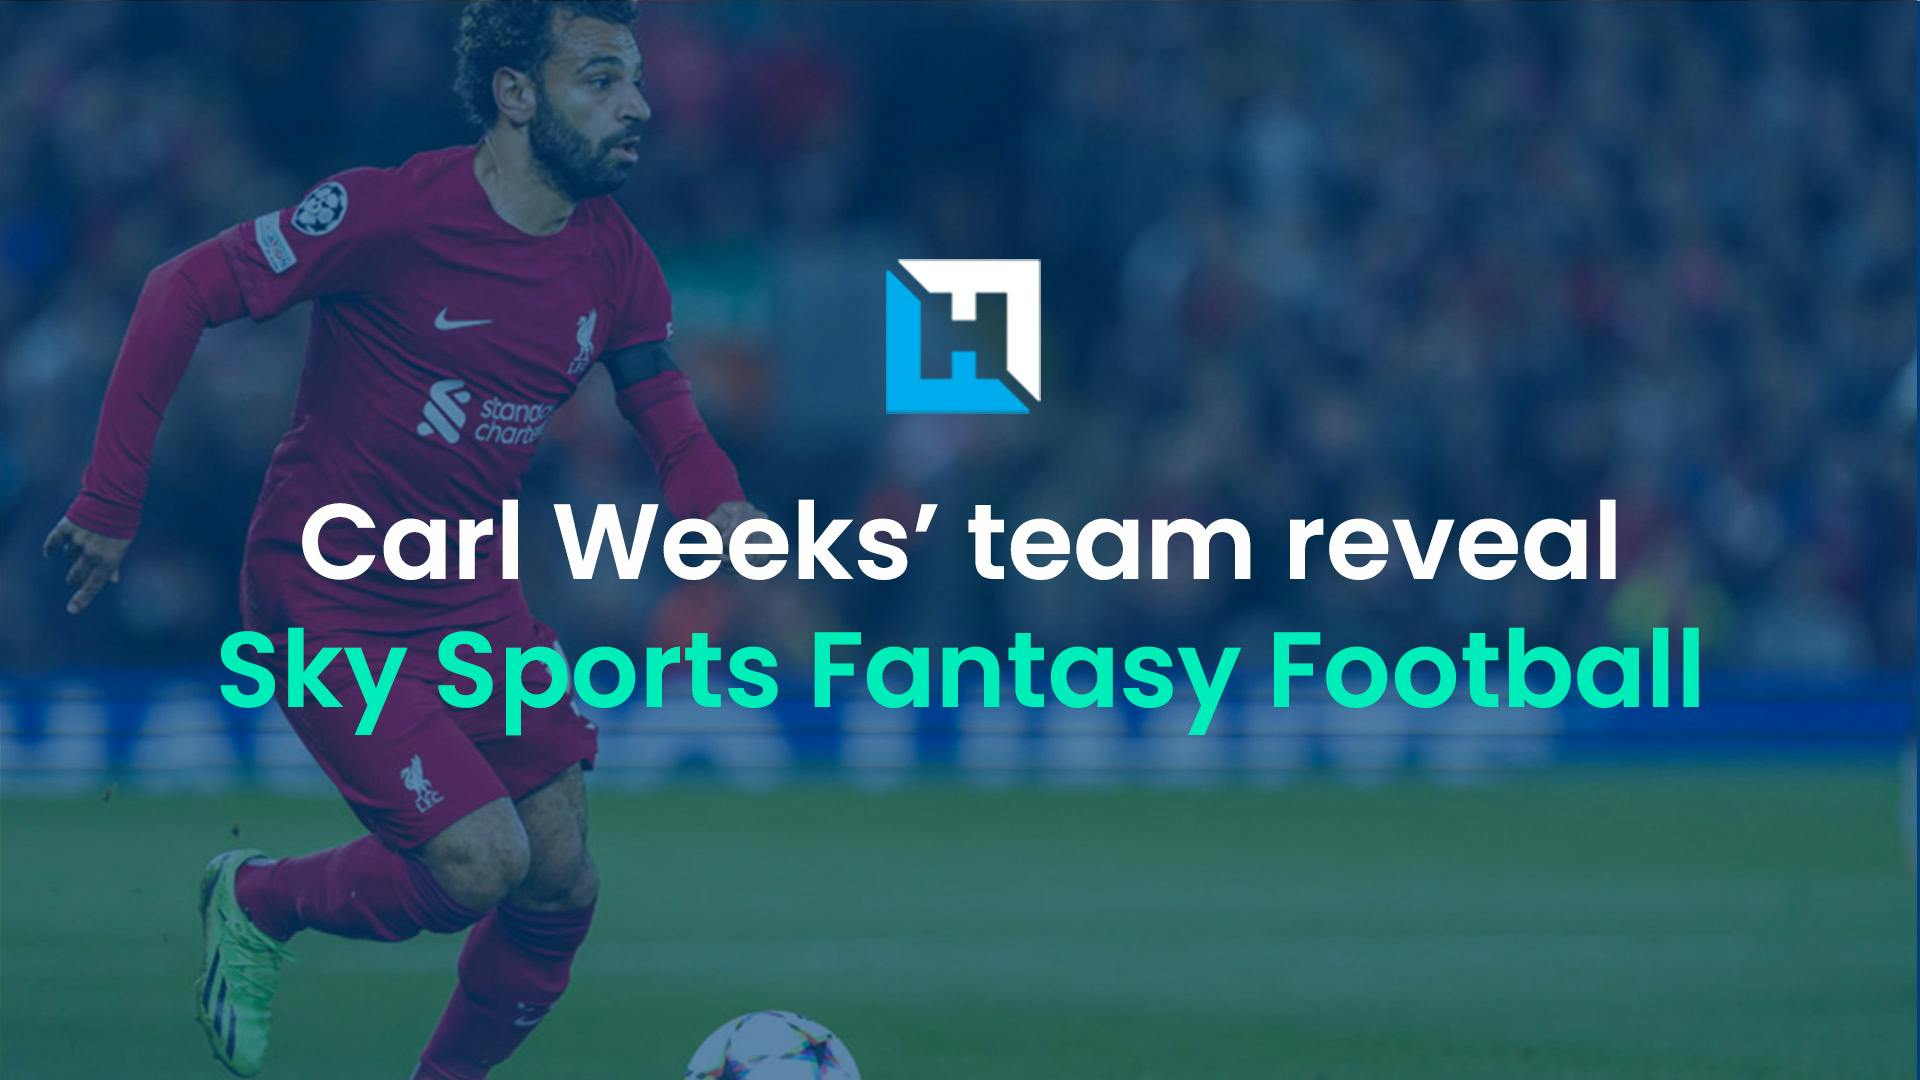 Sky Fantasy Football Gameweek 11: Carl Weeks’ team reveal and best team analysis